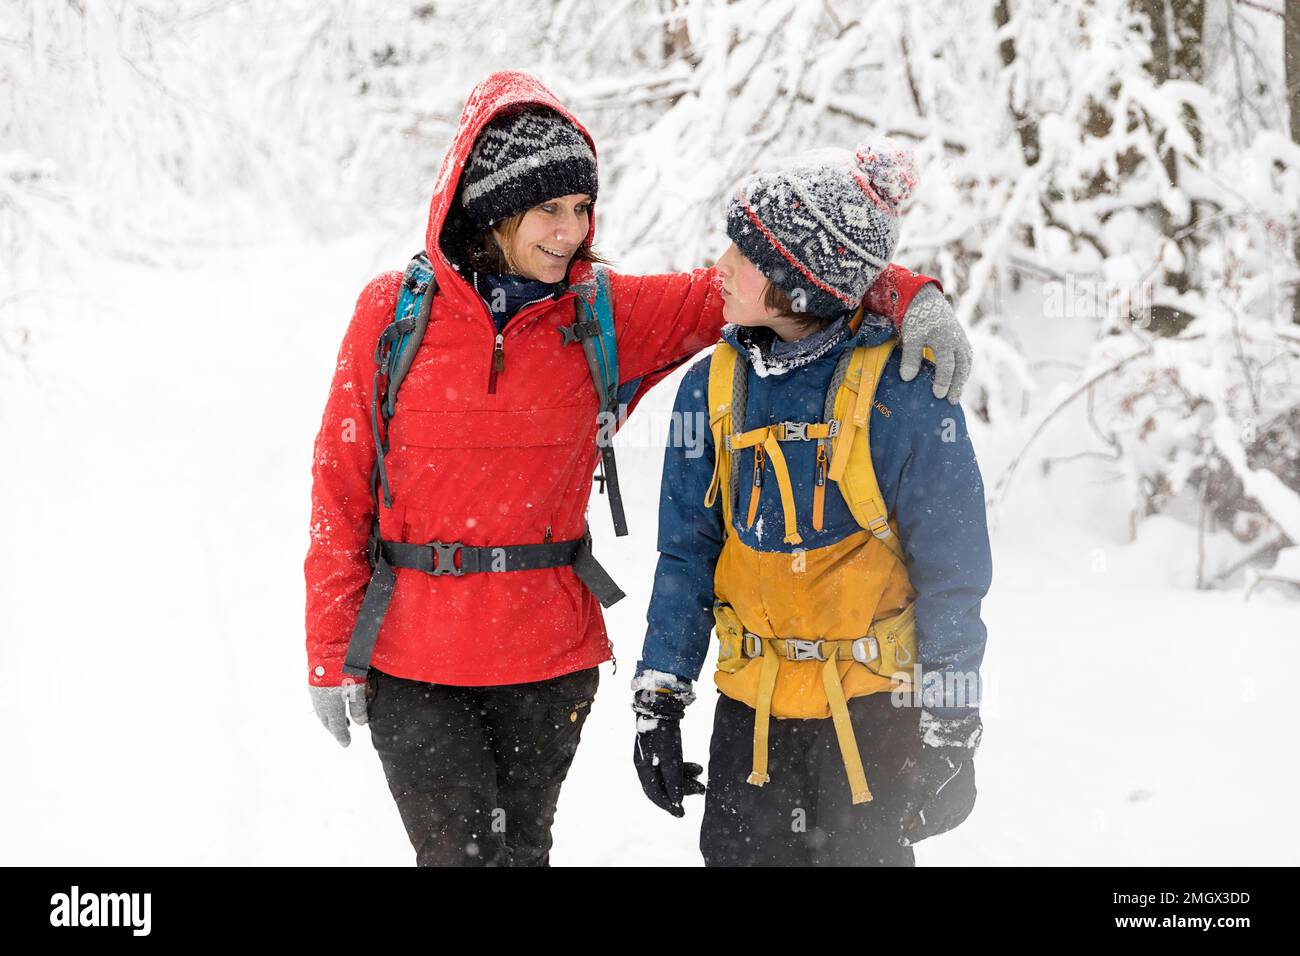 Mutter und Sohn haben Spaß beim Wandern im Winter während des Schneefalls in den Urwäldern der Region Notranjska, Dolenjske toplice, Slowenien Stockfoto